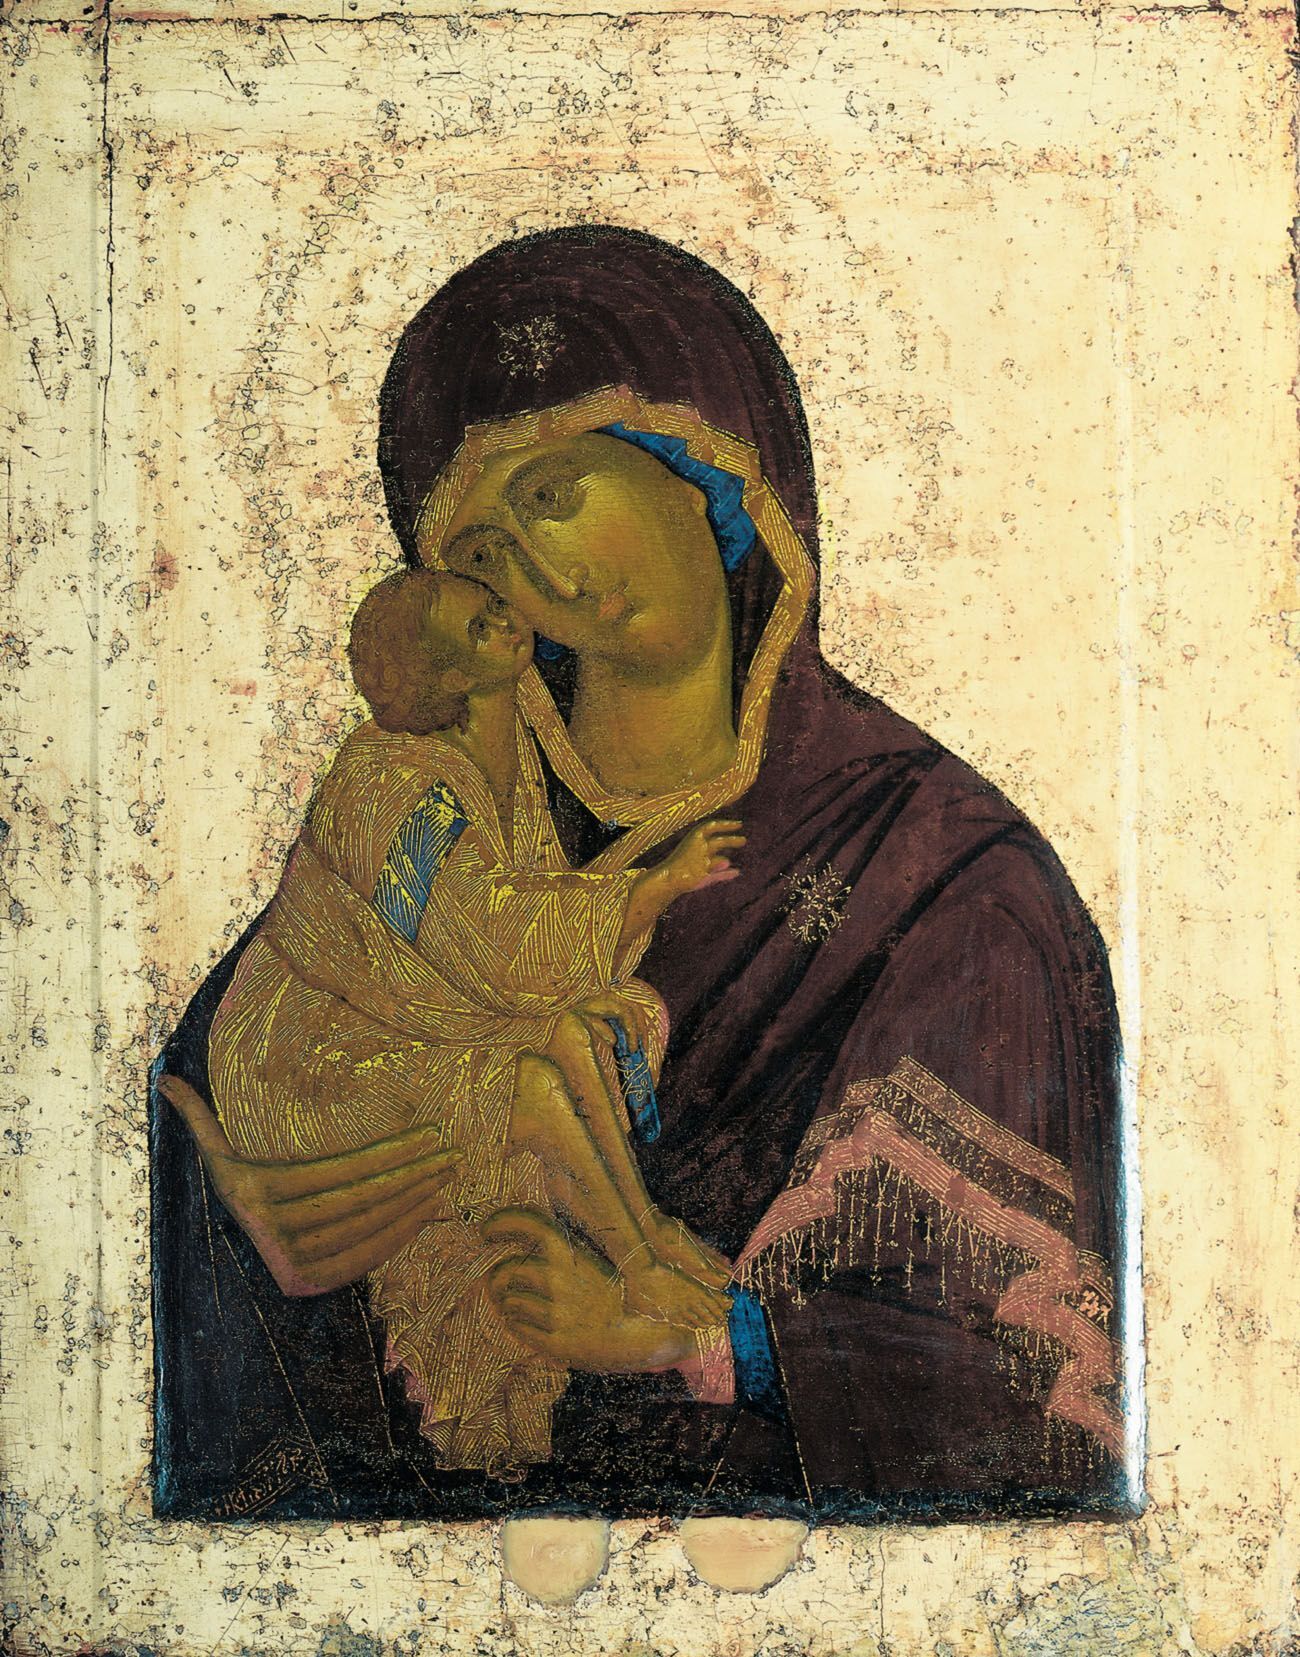 Донская икона Божией Матери была написана между 1380-1395 годами.